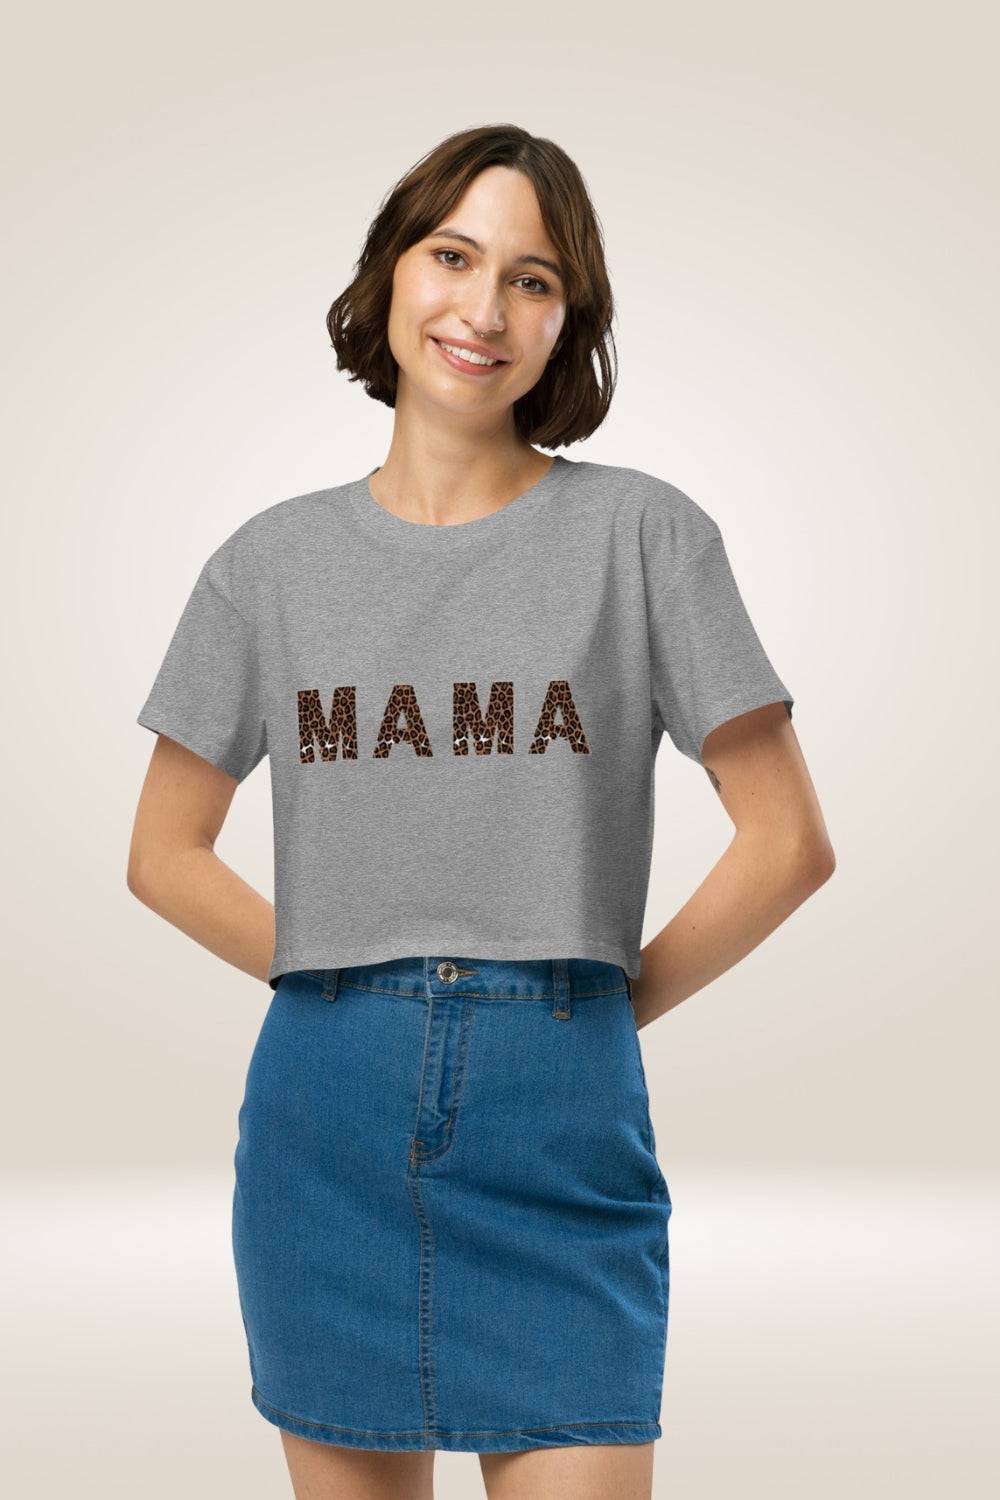 Leopard Print ''Mama'' Gray Crop Top - TGC Boutique - Tops